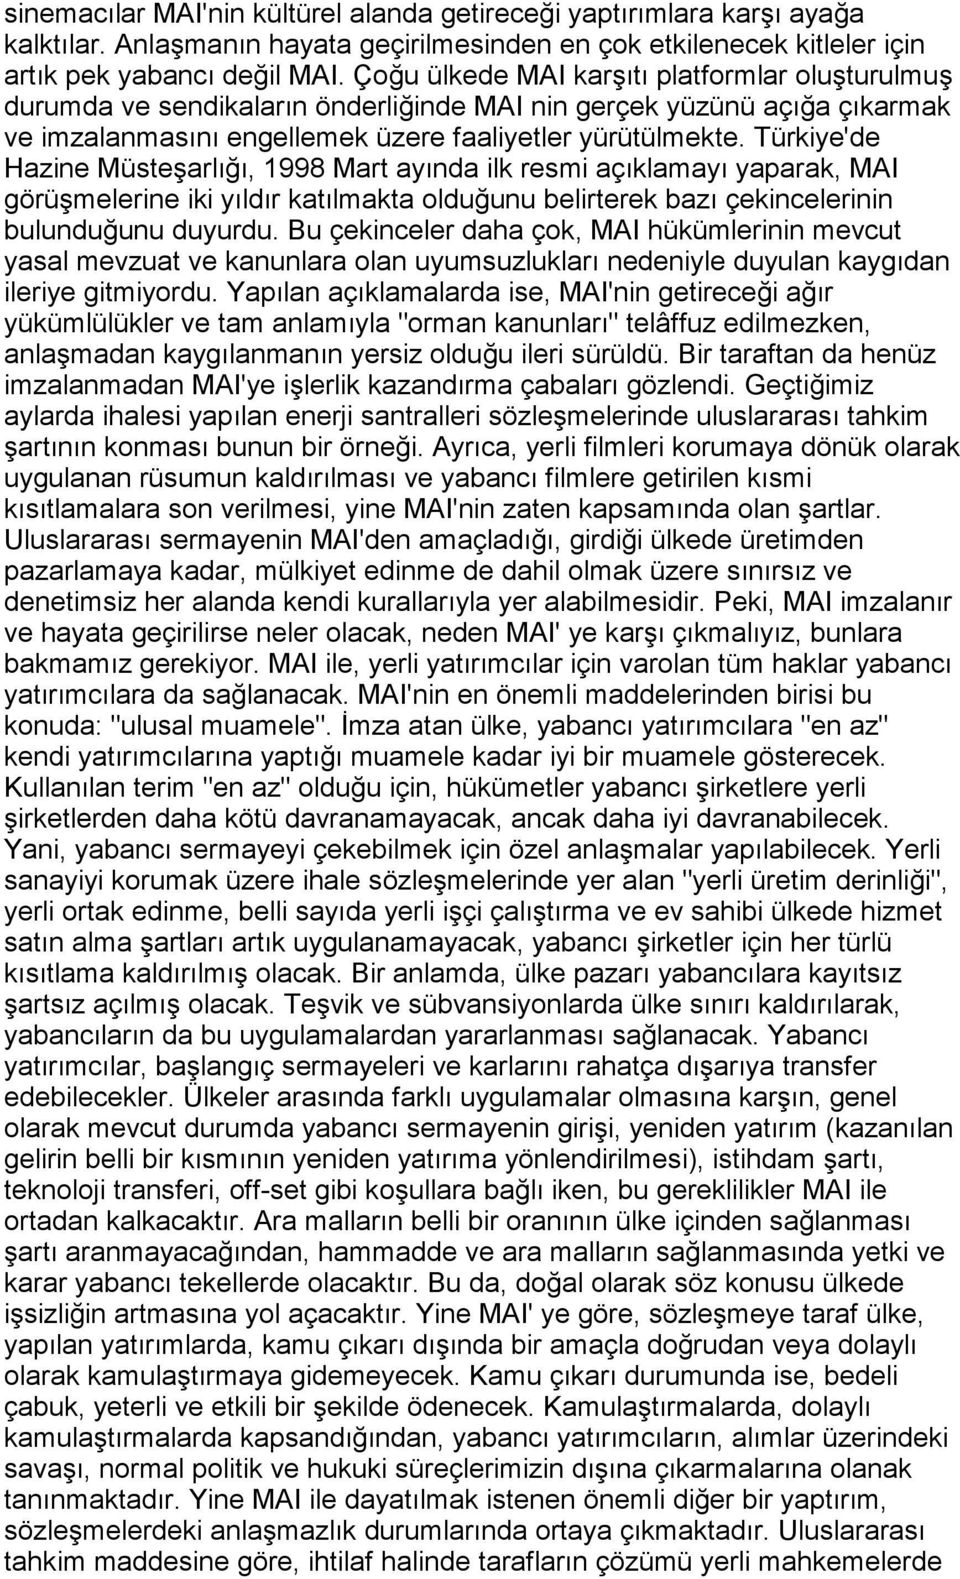 Türkiye'de Hazine Müsteşarlõğõ, 1998 Mart ayõnda ilk resmi açõklamayõ yaparak, MAI görüşmelerine iki yõldõr katõlmakta olduğunu belirterek bazõ çekincelerinin bulunduğunu duyurdu.